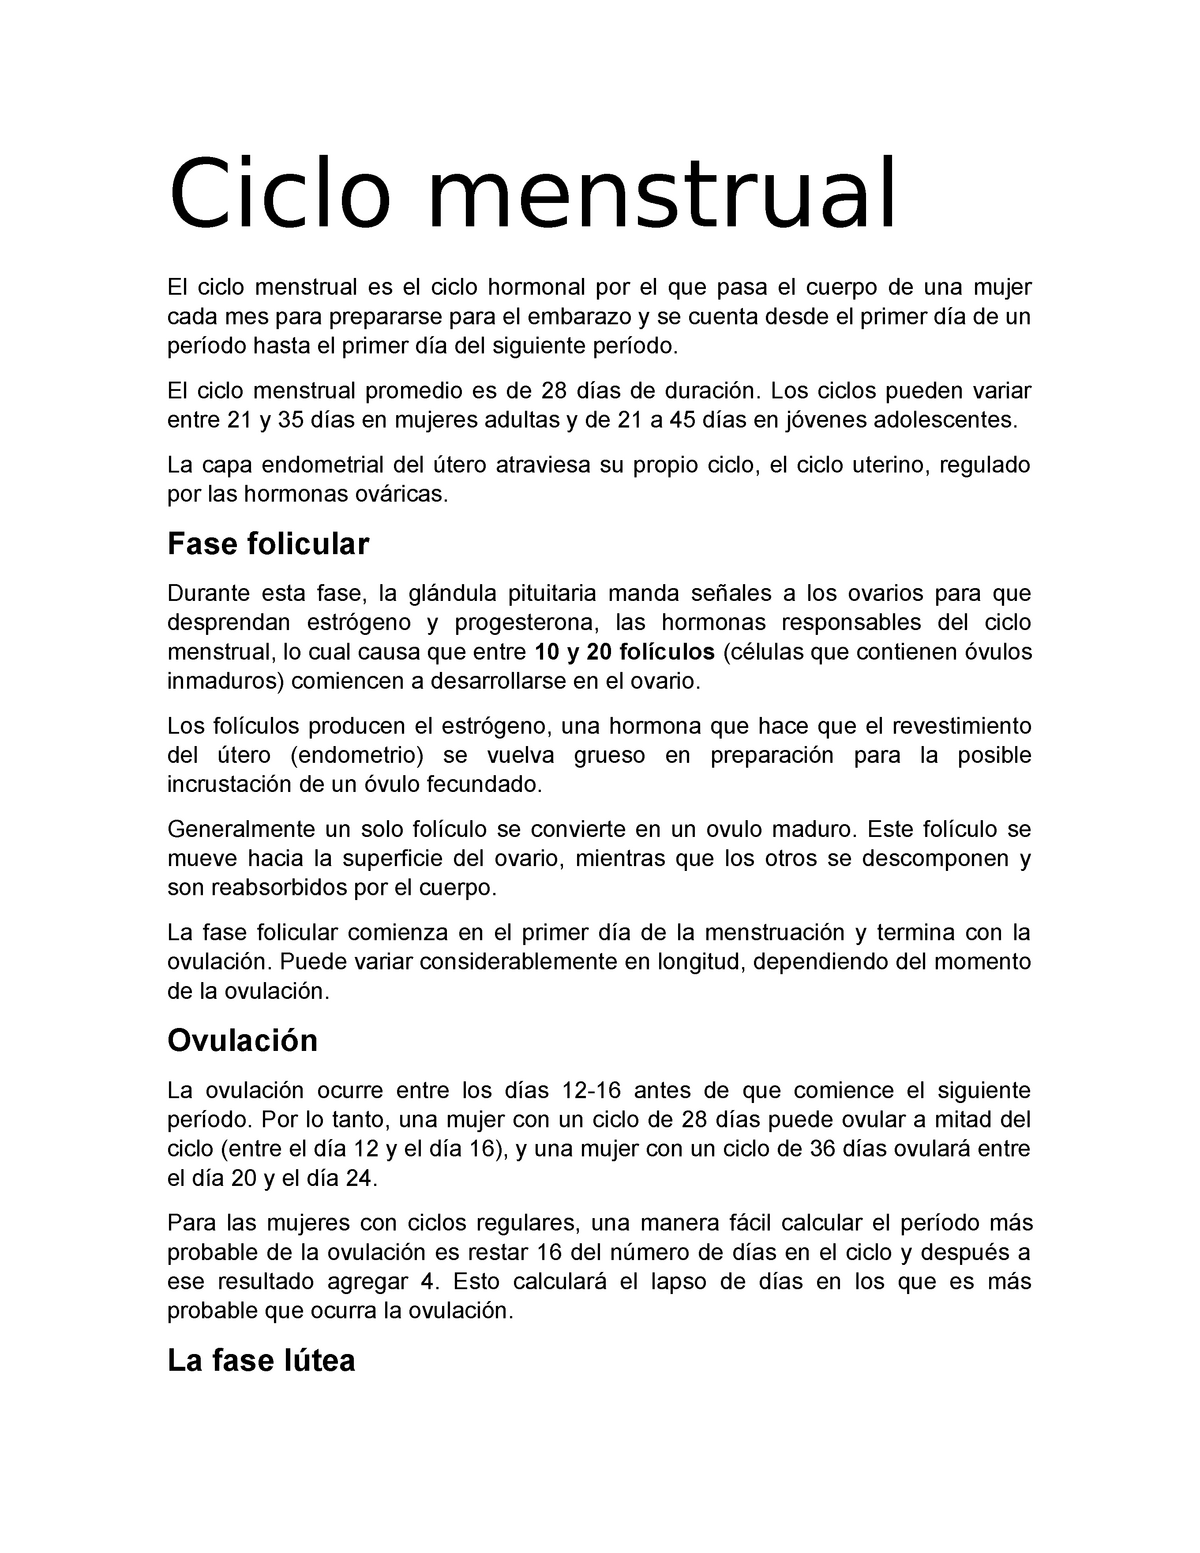 Ciclo Menstrual Apunte Para La Clase De Histologia Ciclo Menstrual El Ciclo Menstrual Es El 9089